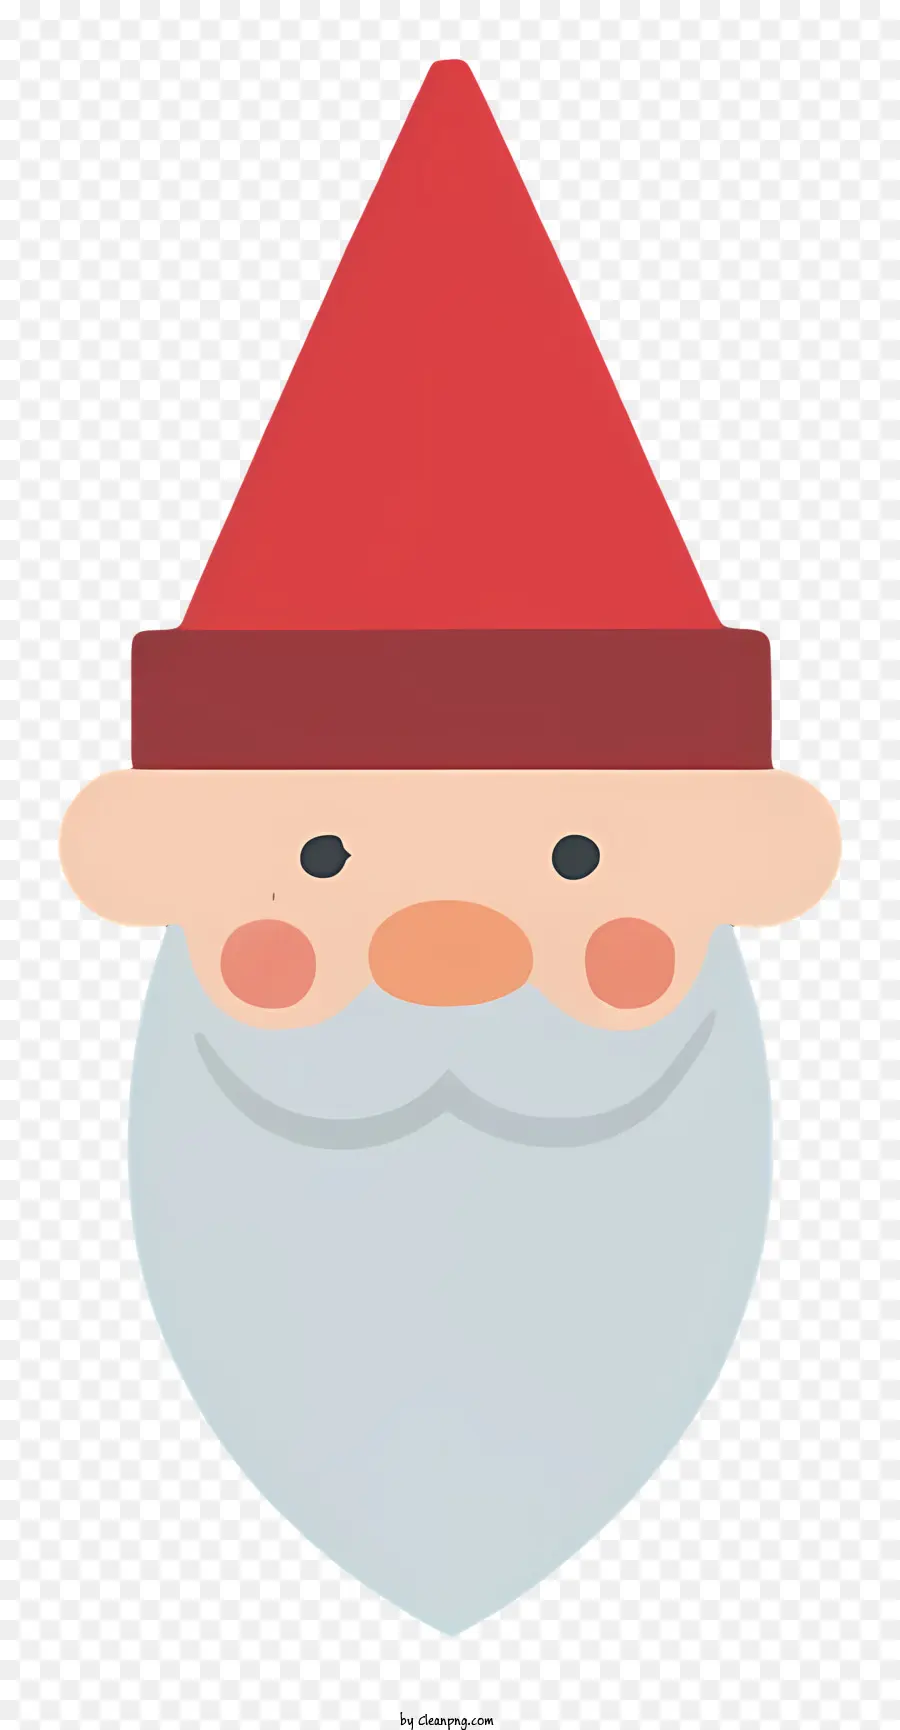 người đàn ông râu đỏ mũ đỏ râu trắng cười toe toét - Người đàn ông có râu với mũ đỏ và râu trắng